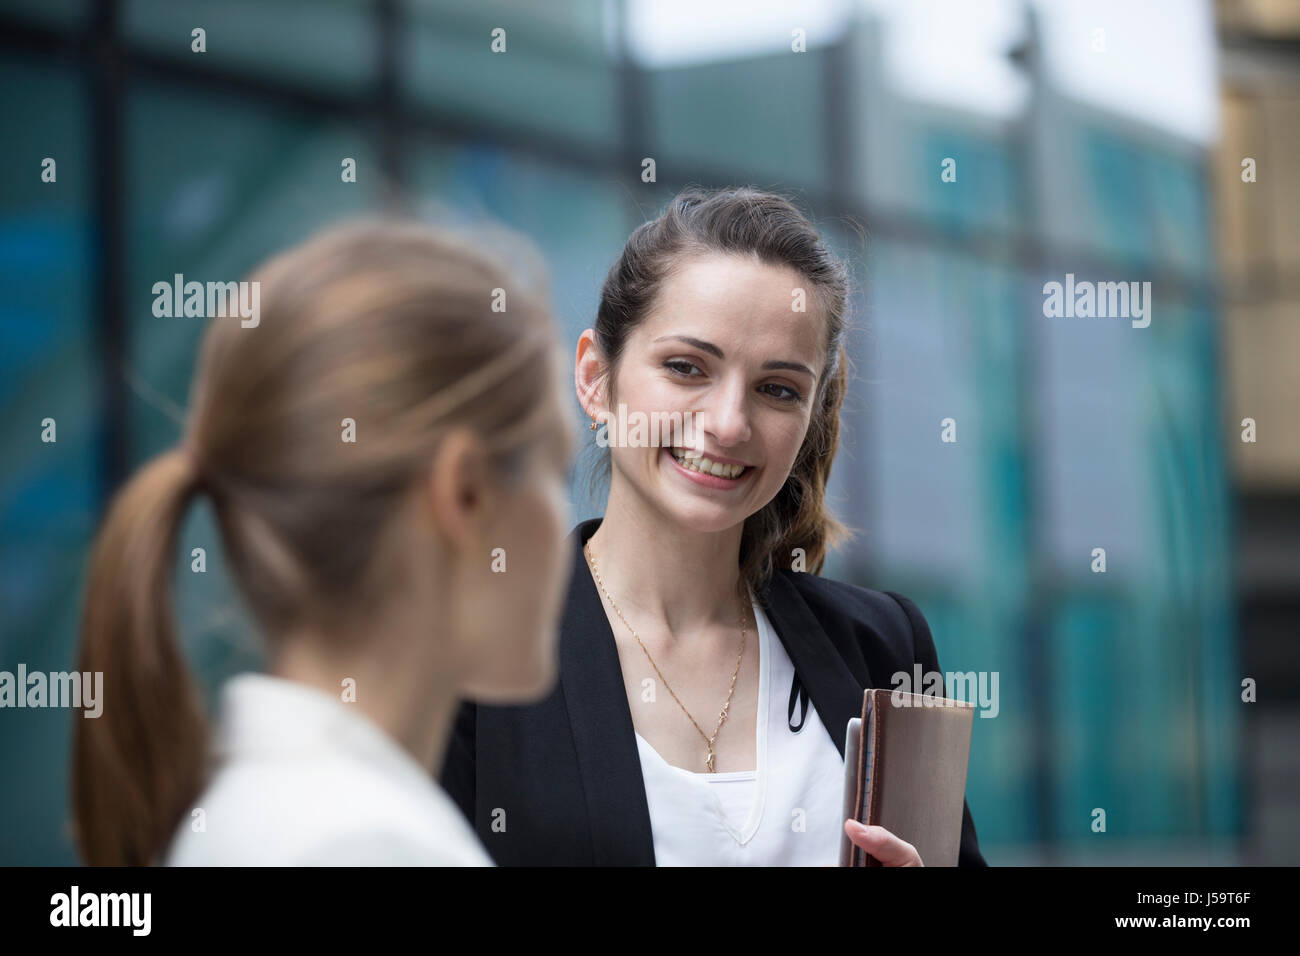 Porträt von zwei kaukasischen Geschäftsfrauen außerhalb modernen Büro Buidling sprechen. Stockfoto